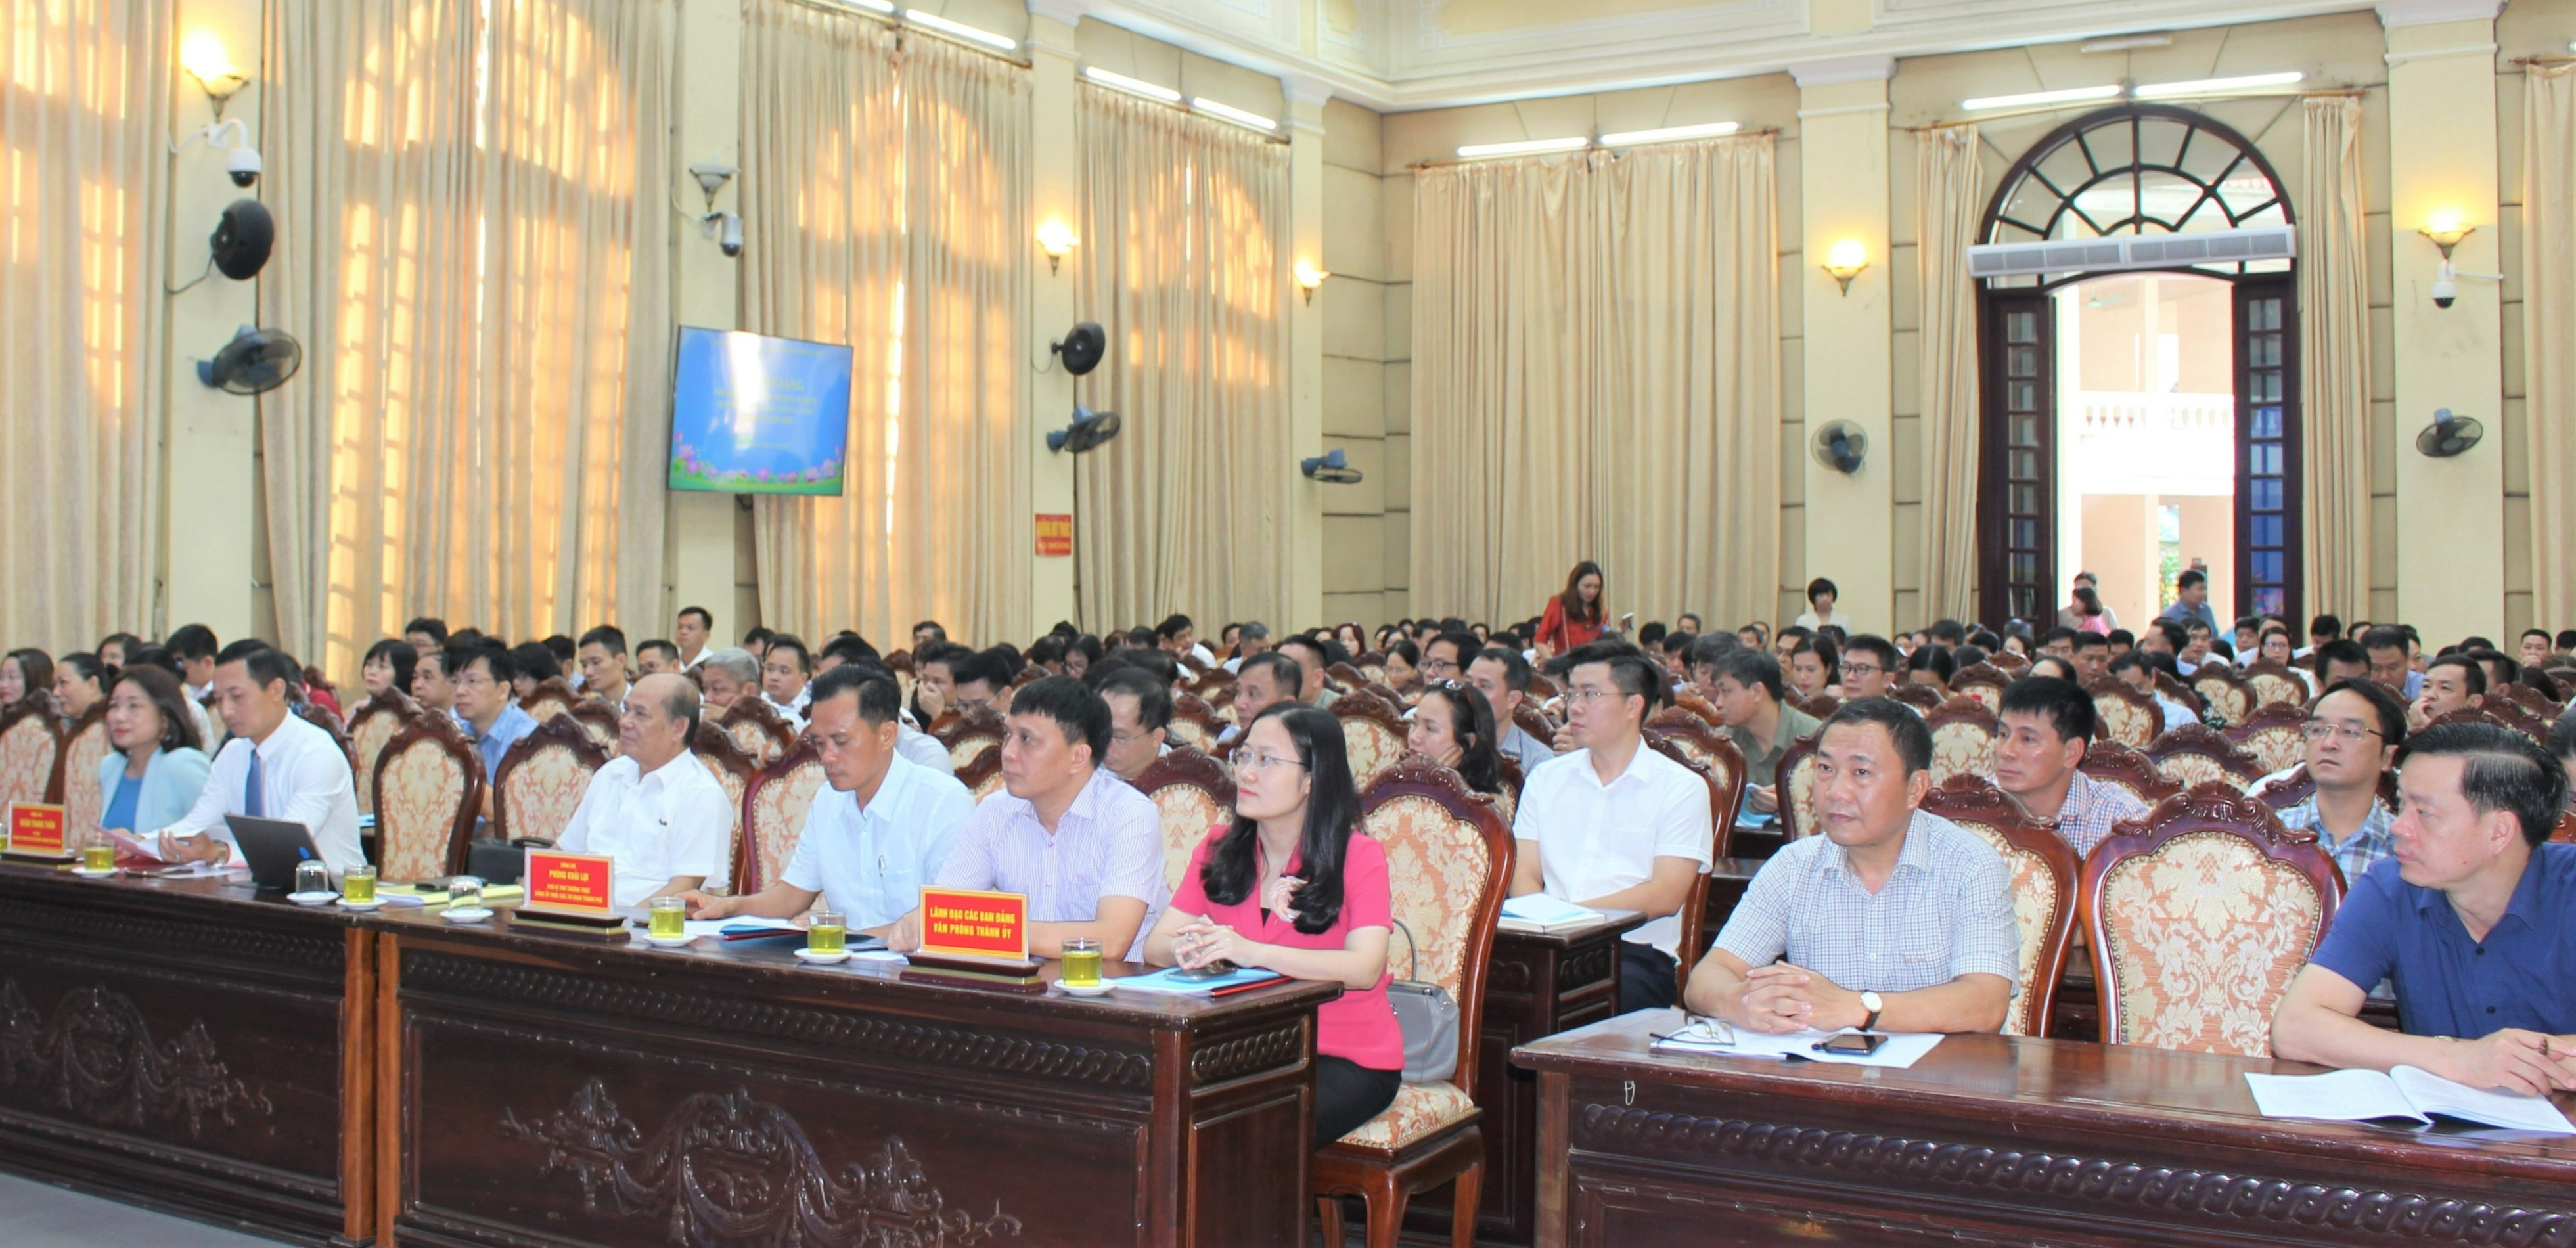 Hà Nội: Bồi dưỡng cán bộ quy hoạch nguồn chức danh cấp ủy cơ sở cho 250  người